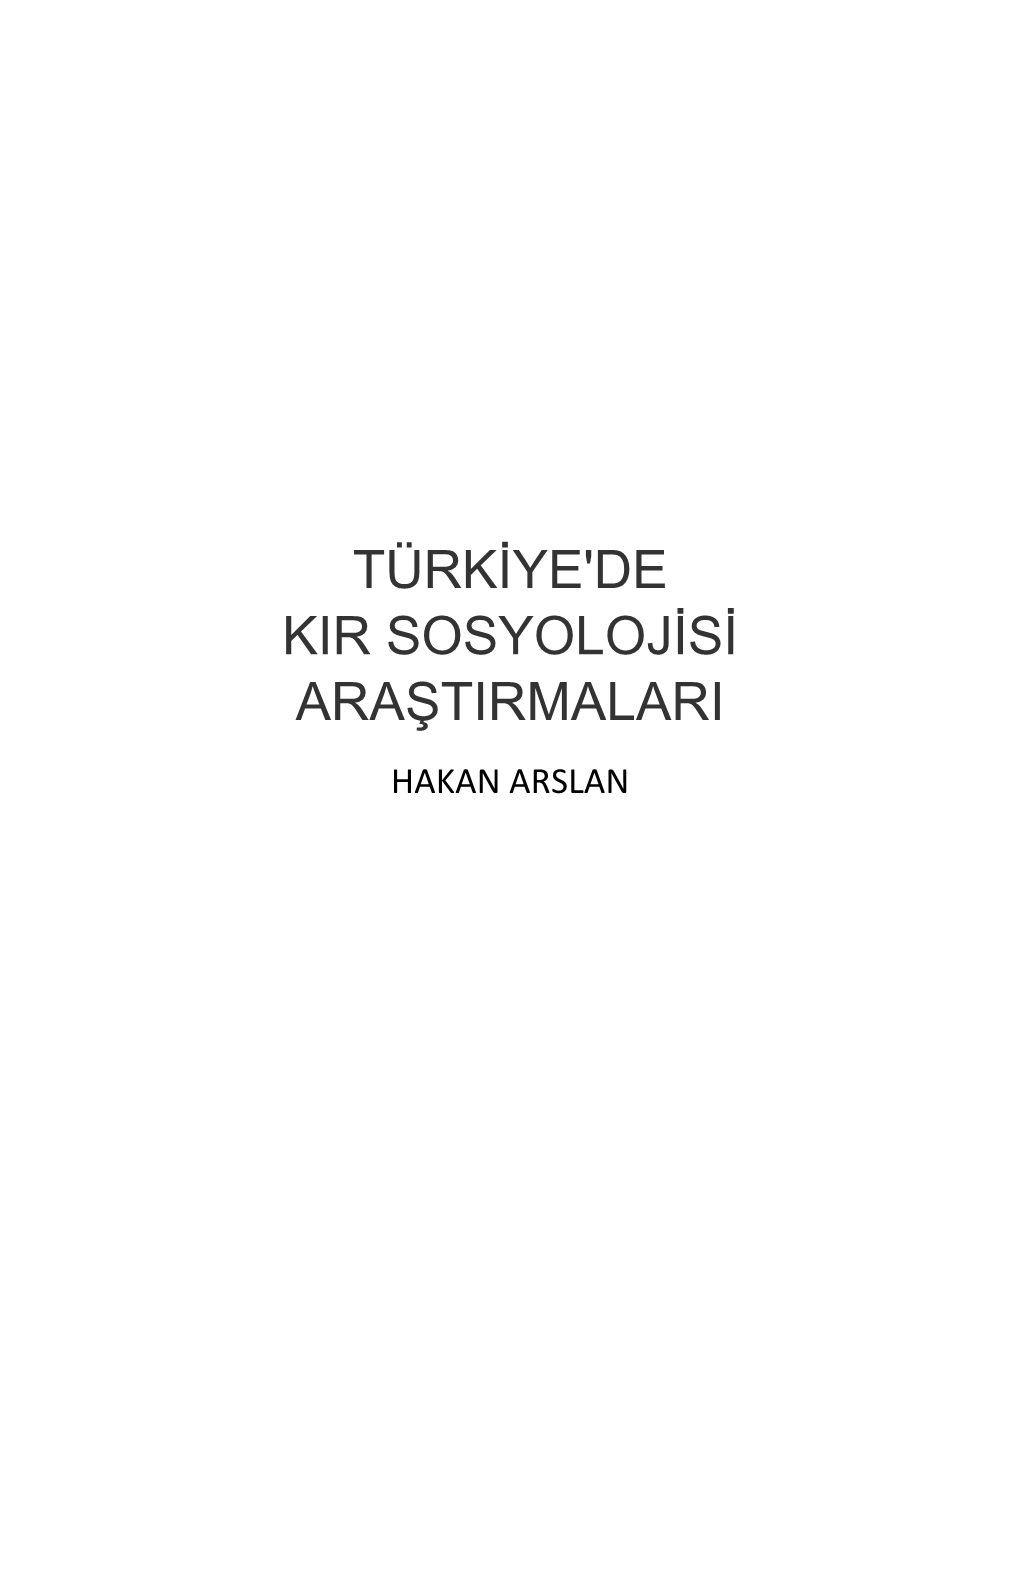 Türkiye'de Kir Sosyolojisi Araştirmalari Hakan Arslan